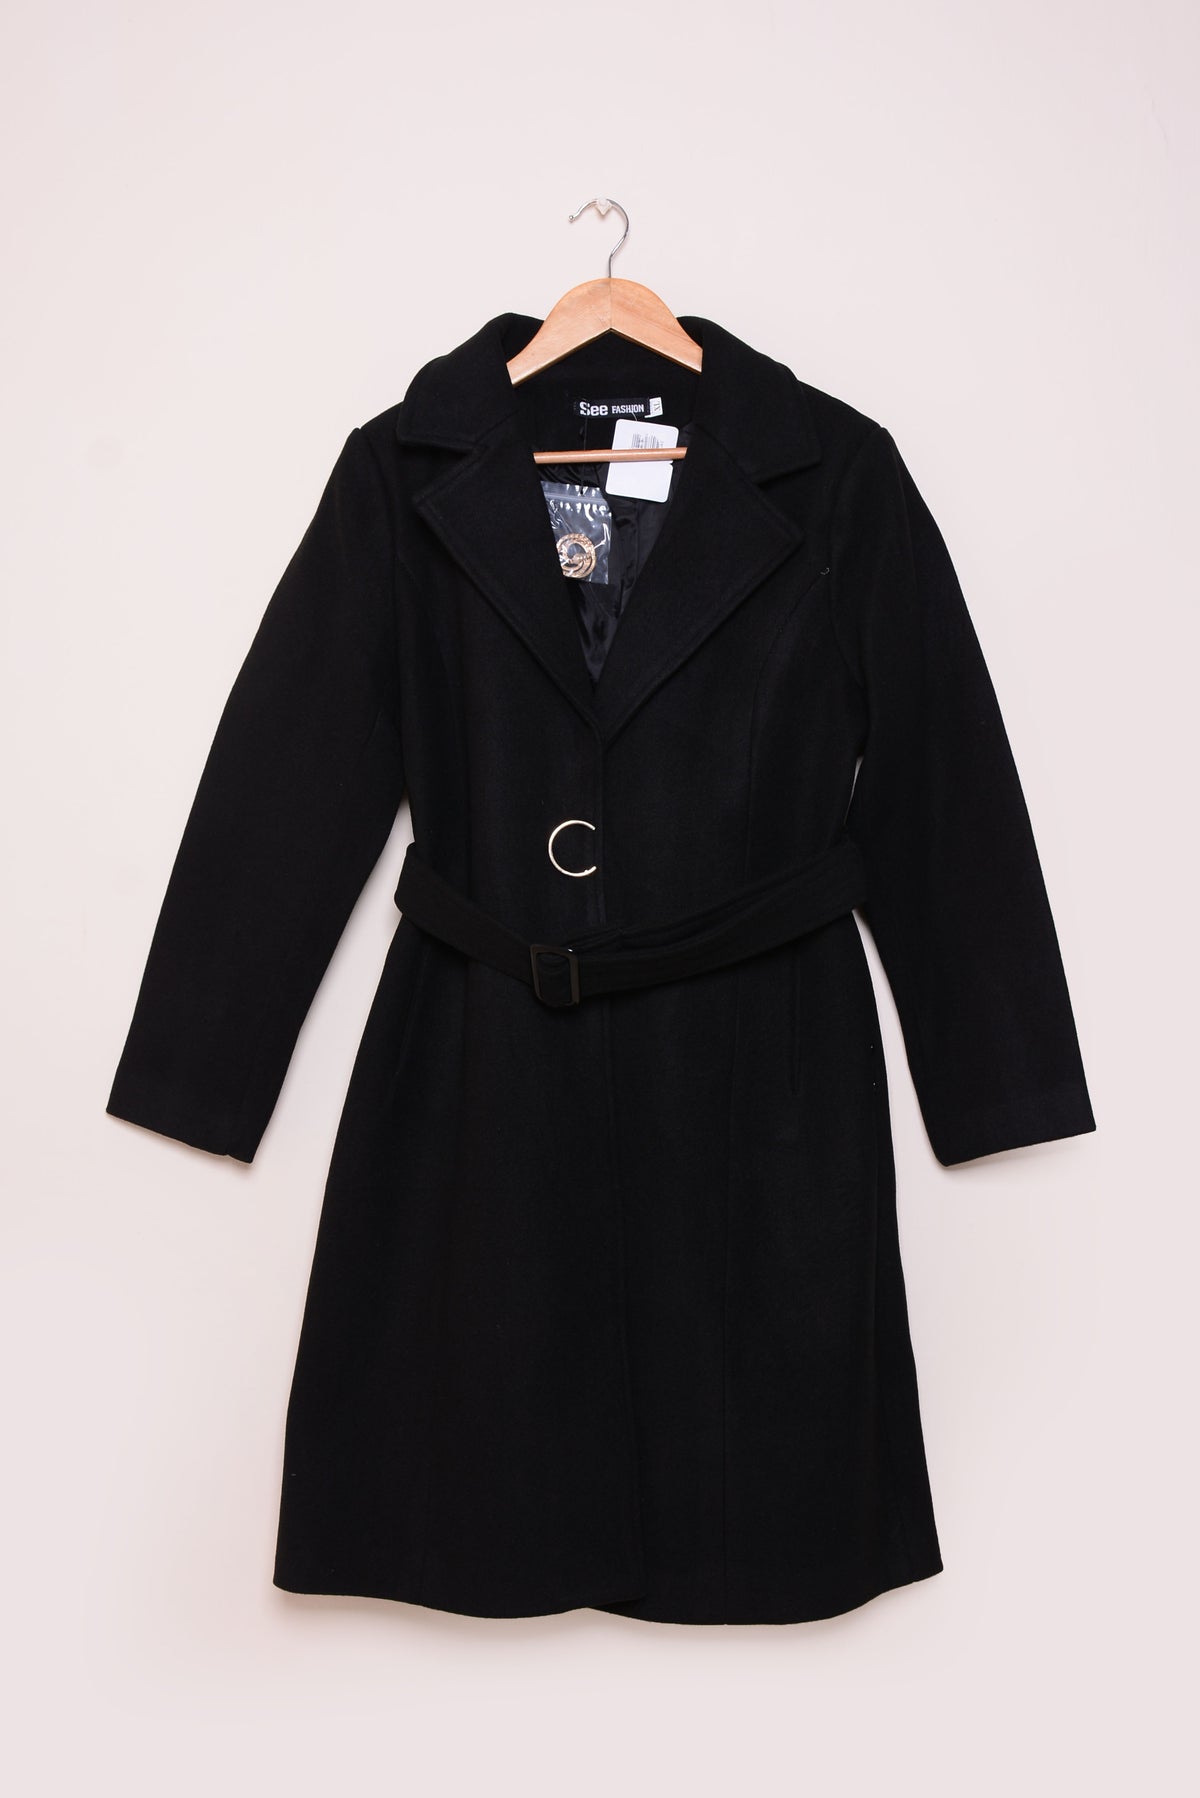 Ladies Winter Long Coats ykn-583 Black